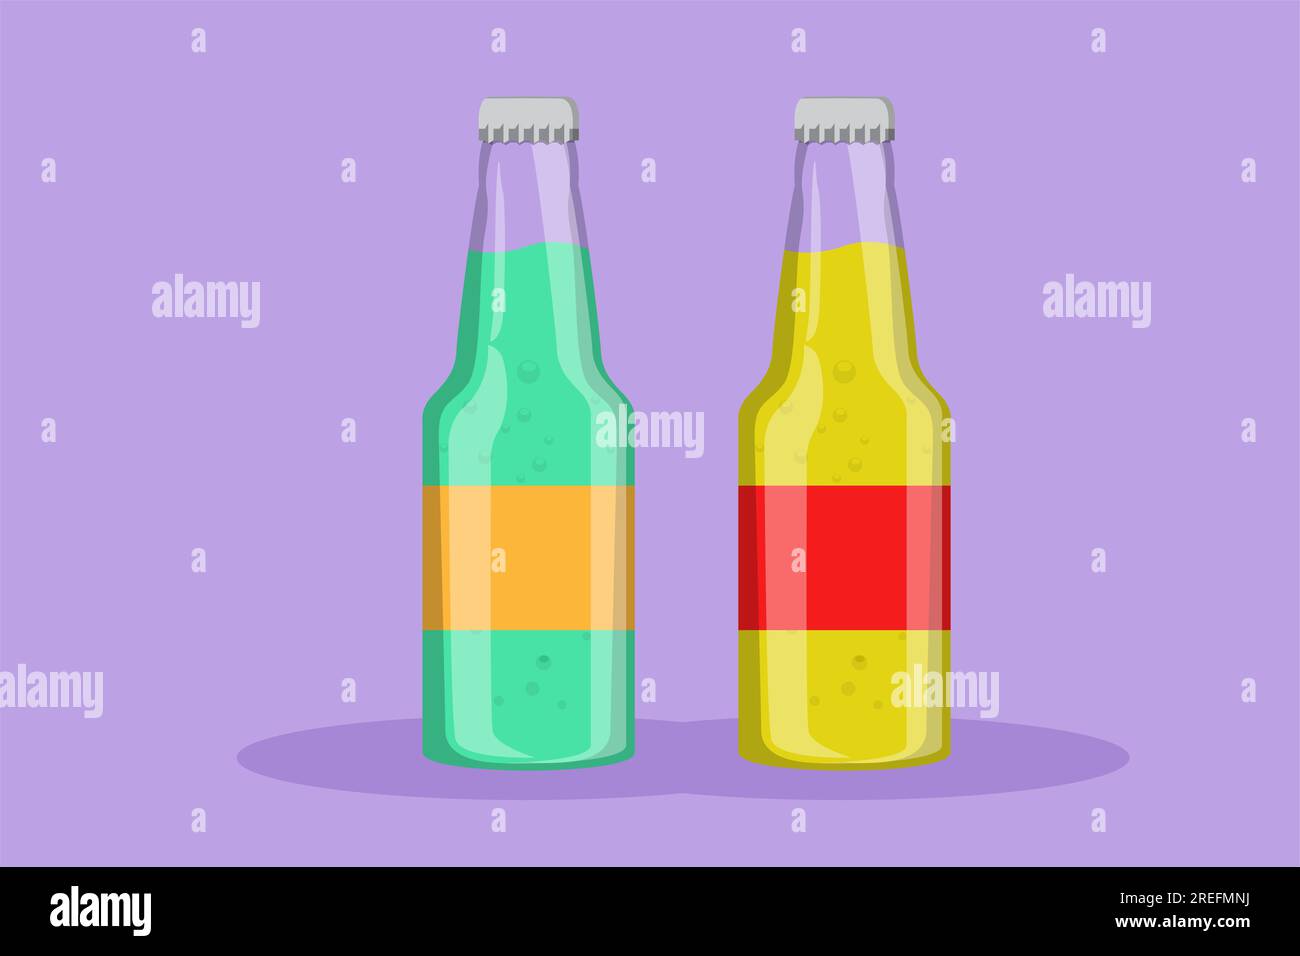 Flaches Grafikdesign mit stilisiertem Logo für Erfrischungsgetränke auf Glasflaschen. Emblem Getränkegeschäft-Konzept für Café-Shop oder Gastronomiedienst. dr. Wird aktualisiert Stockfoto